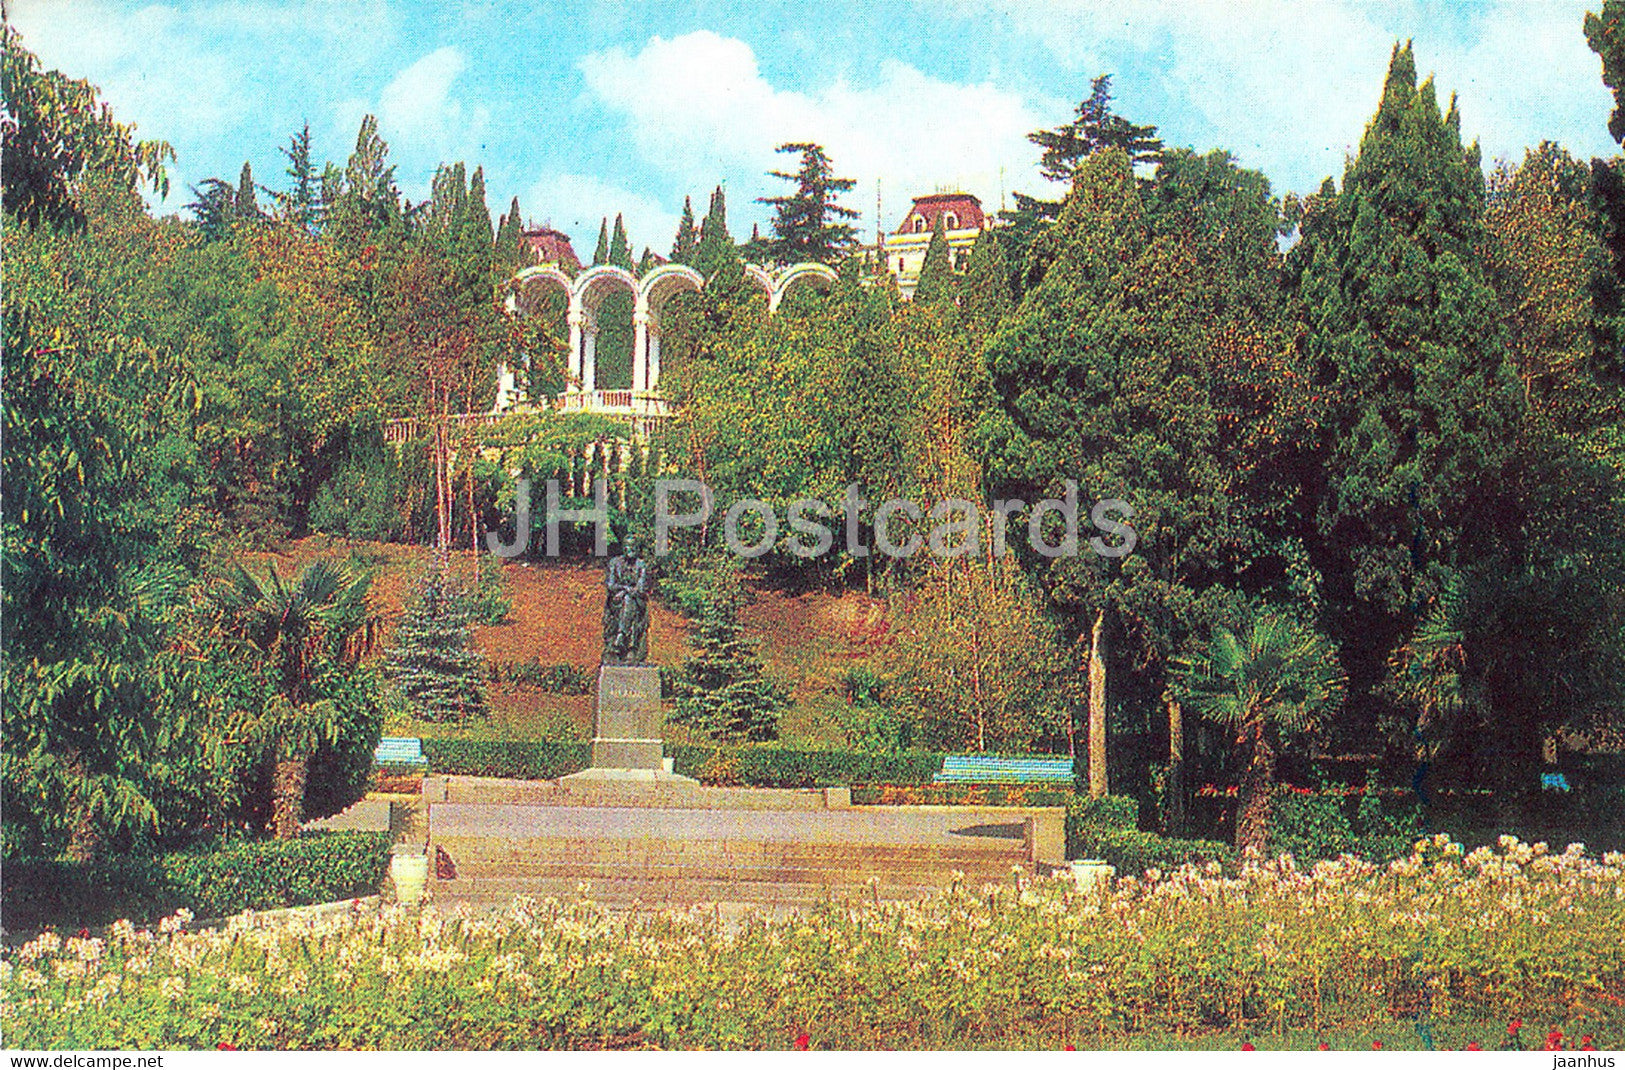 Yalta - Crimea - Gagarin park - monument to Chekhov - 1977 - Ukraine USSR - unused - JH Postcards